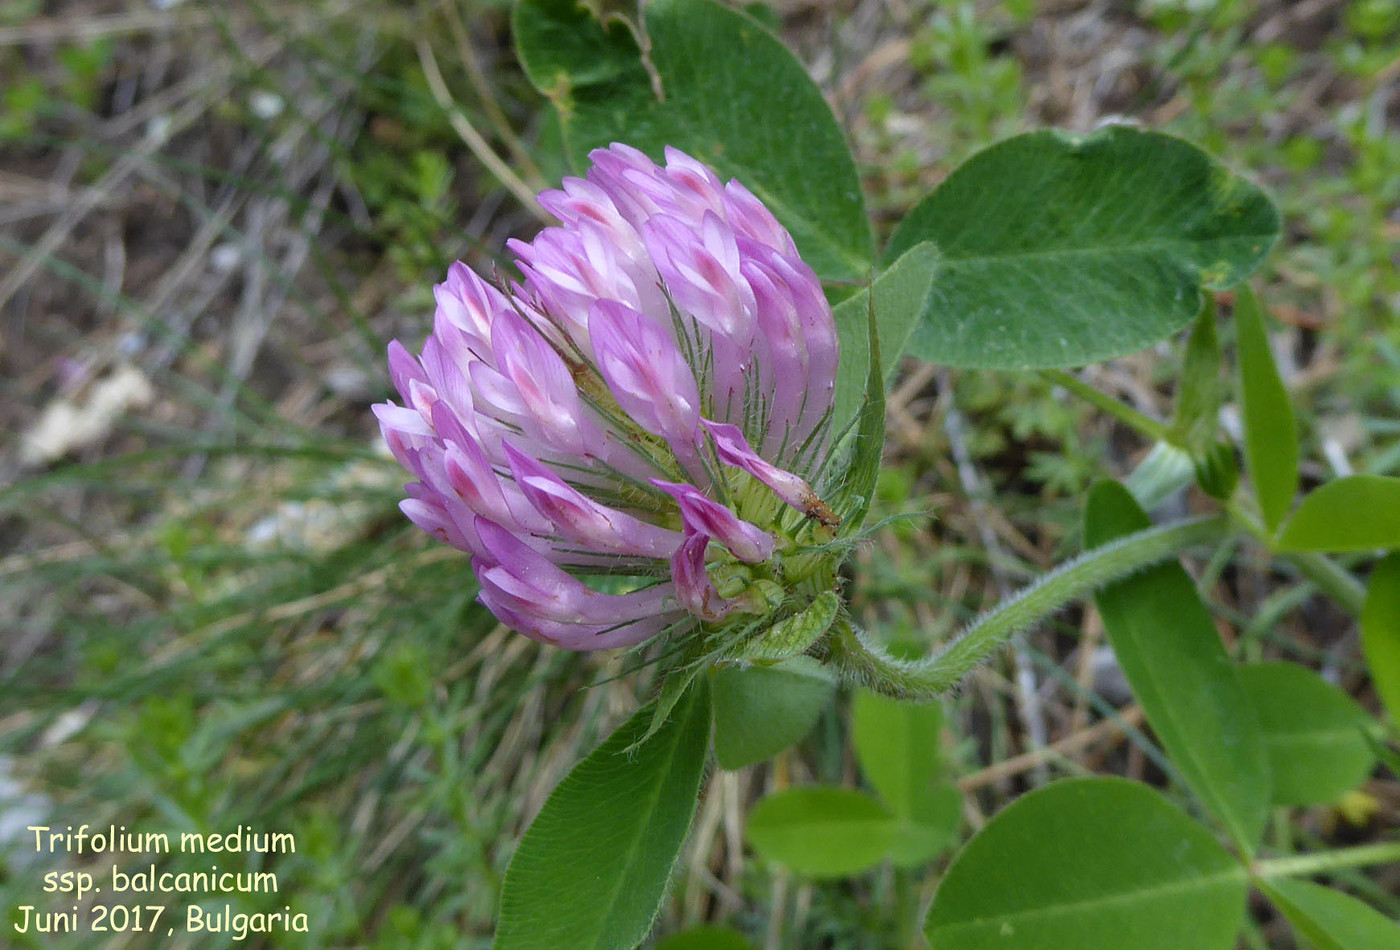 Trifolium medium ssp. balcanicum